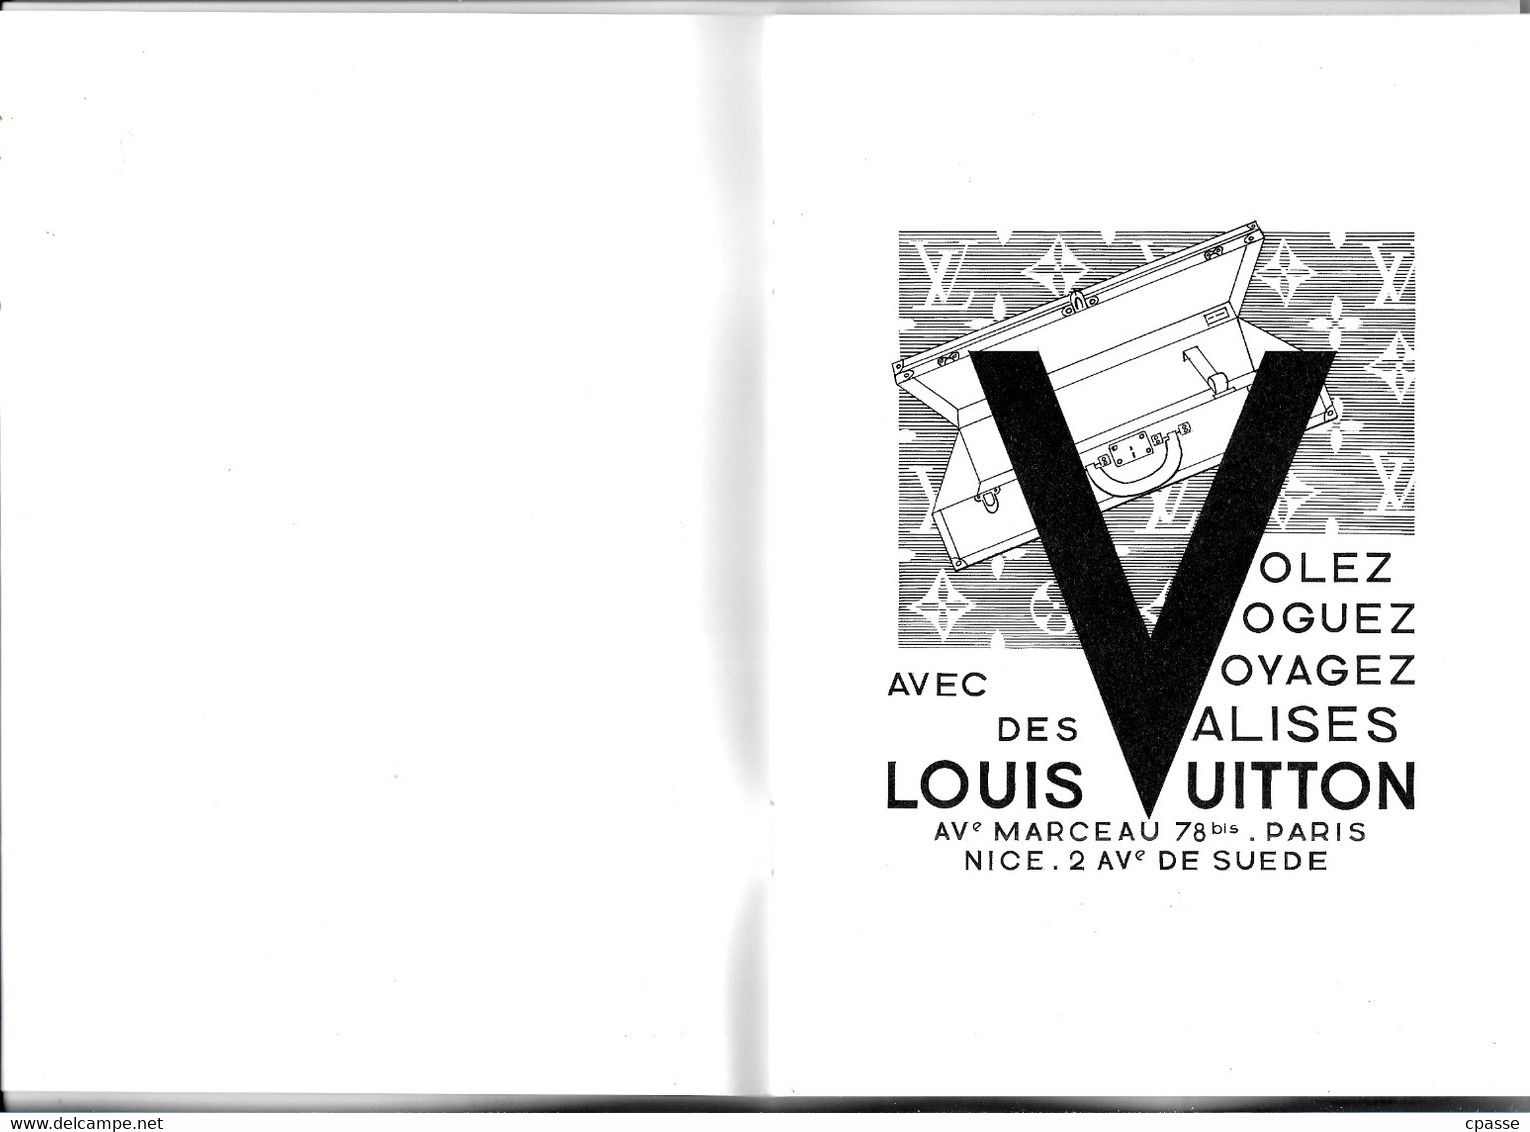 LUXE Catalogue Illustré Exposition LOUIS VUITTON 75 Paris GRAND PALAIS 2015 2016 - Supplies And Equipment